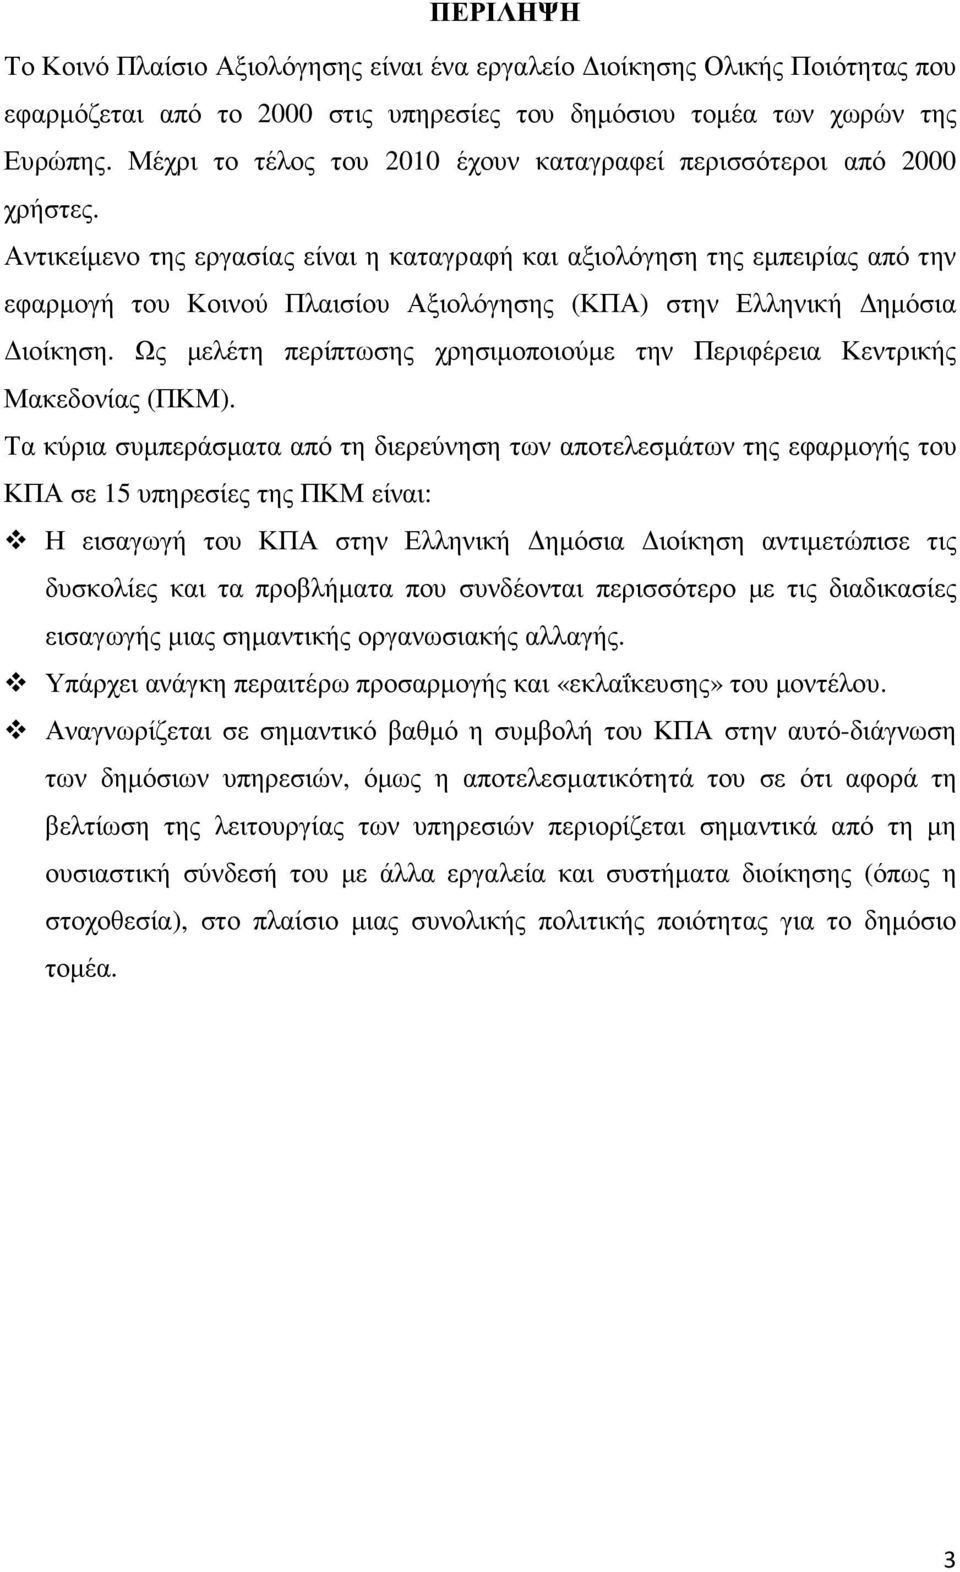 Αντικείµενο της εργασίας είναι η καταγραφή και αξιολόγηση της εµπειρίας από την εφαρµογή του Κοινού Πλαισίου Αξιολόγησης (ΚΠΑ) στην Ελληνική ηµόσια ιοίκηση.